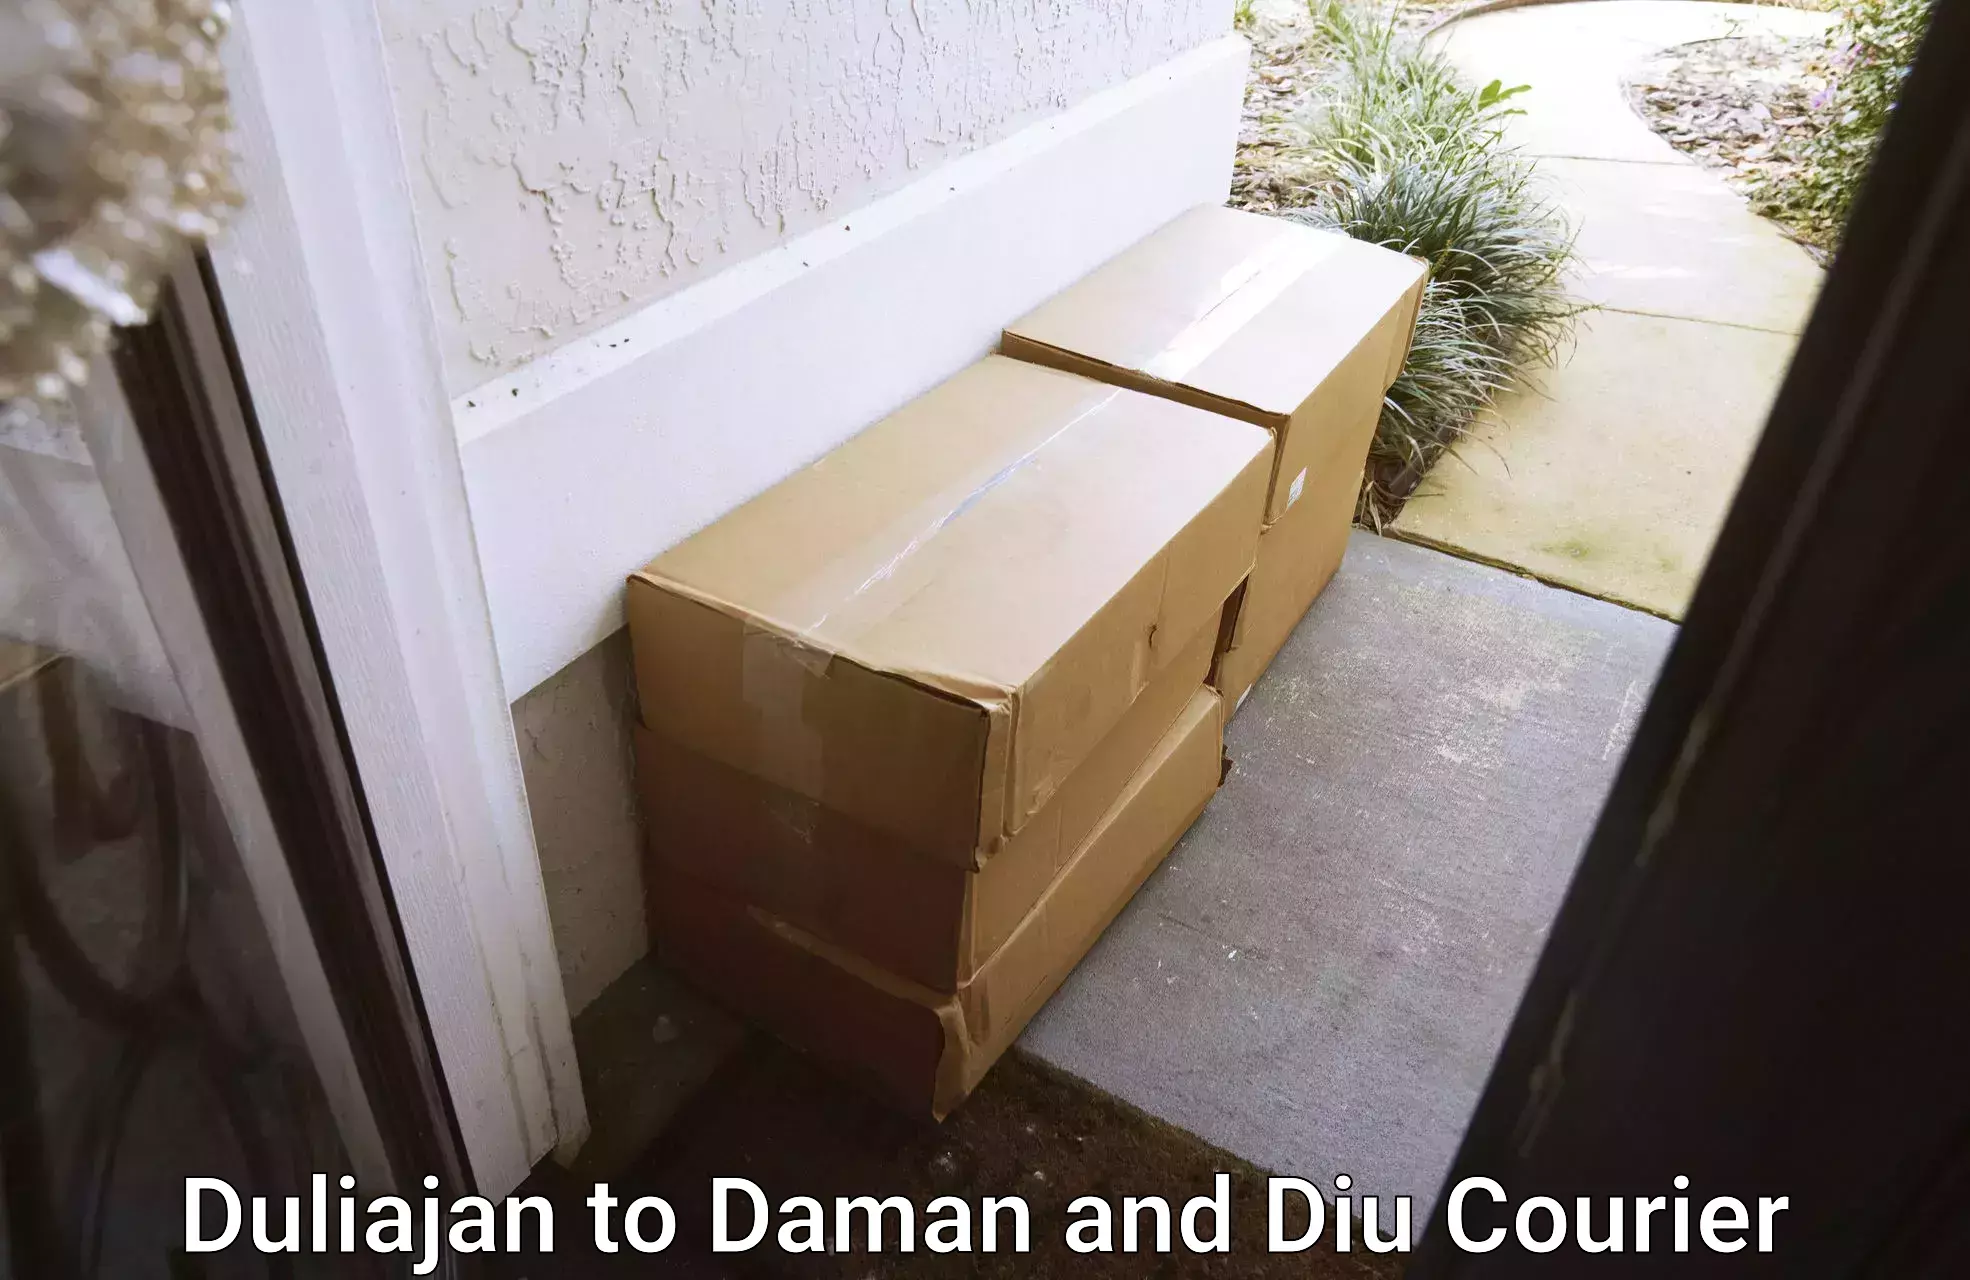 Expedited shipping methods Duliajan to Daman